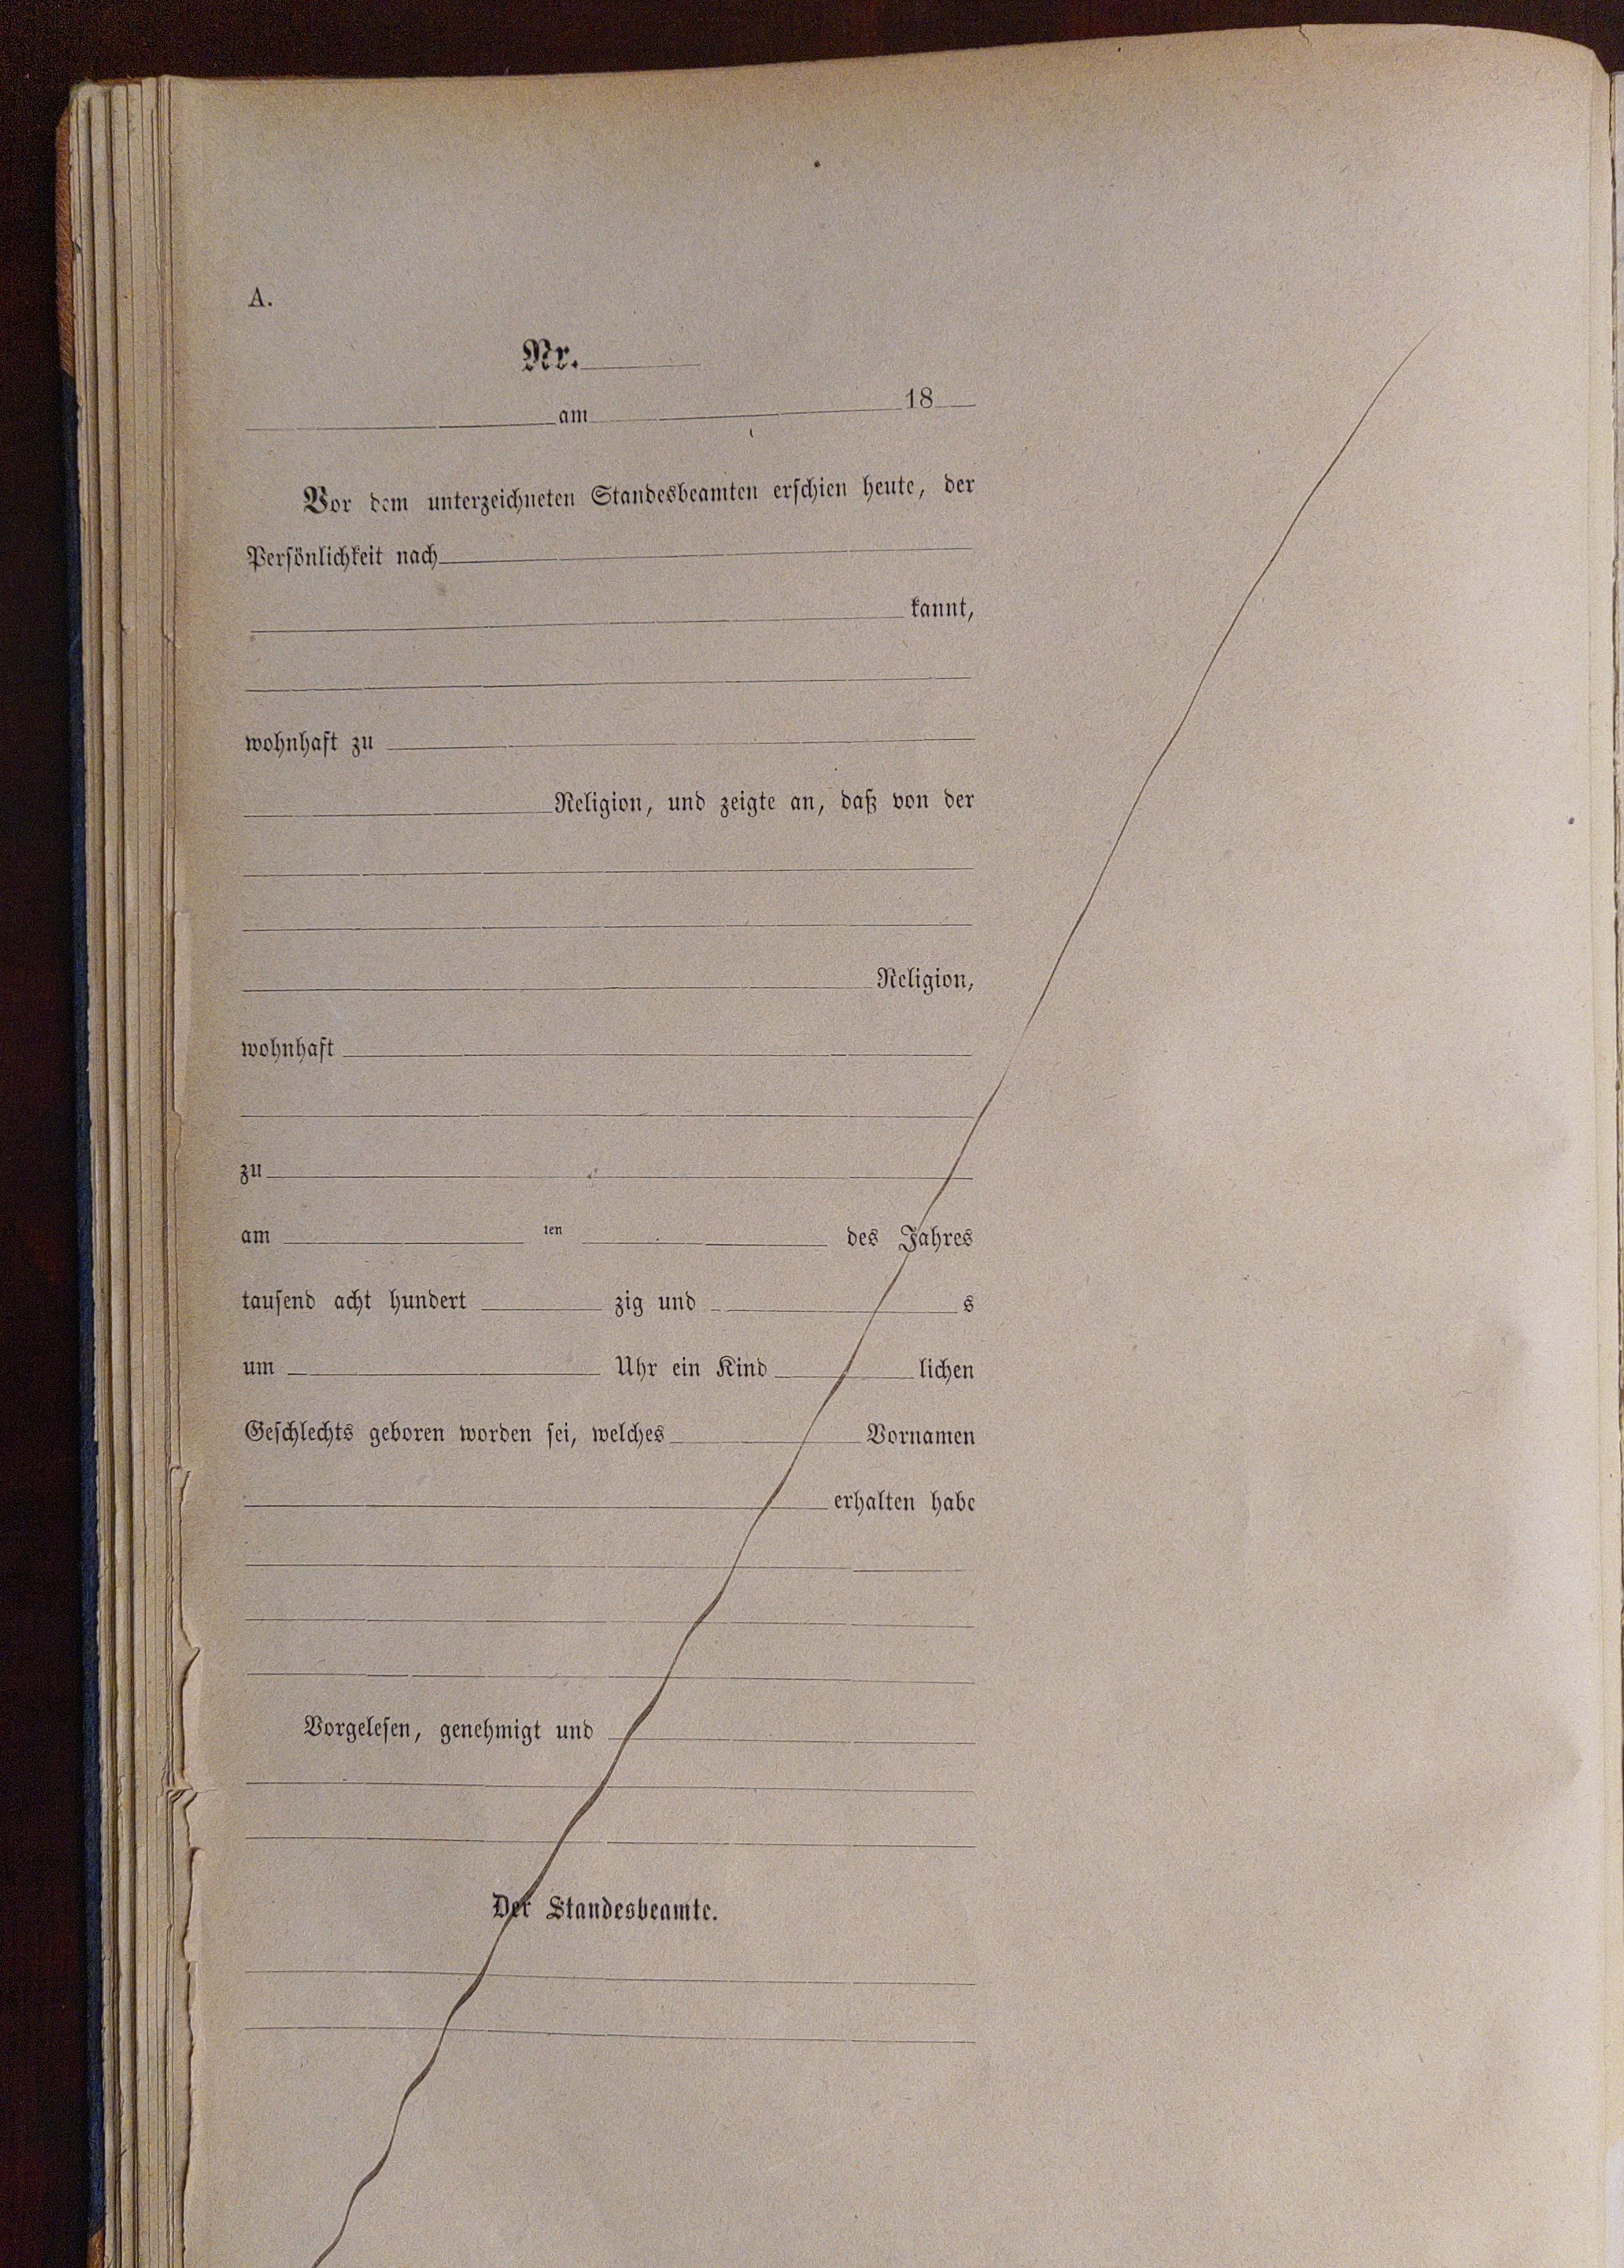 Unausgefülltes und durchgestrichenes Formular für den Eintrag einer Geburt im Geburtsregister des Standesamt, circa 1890.